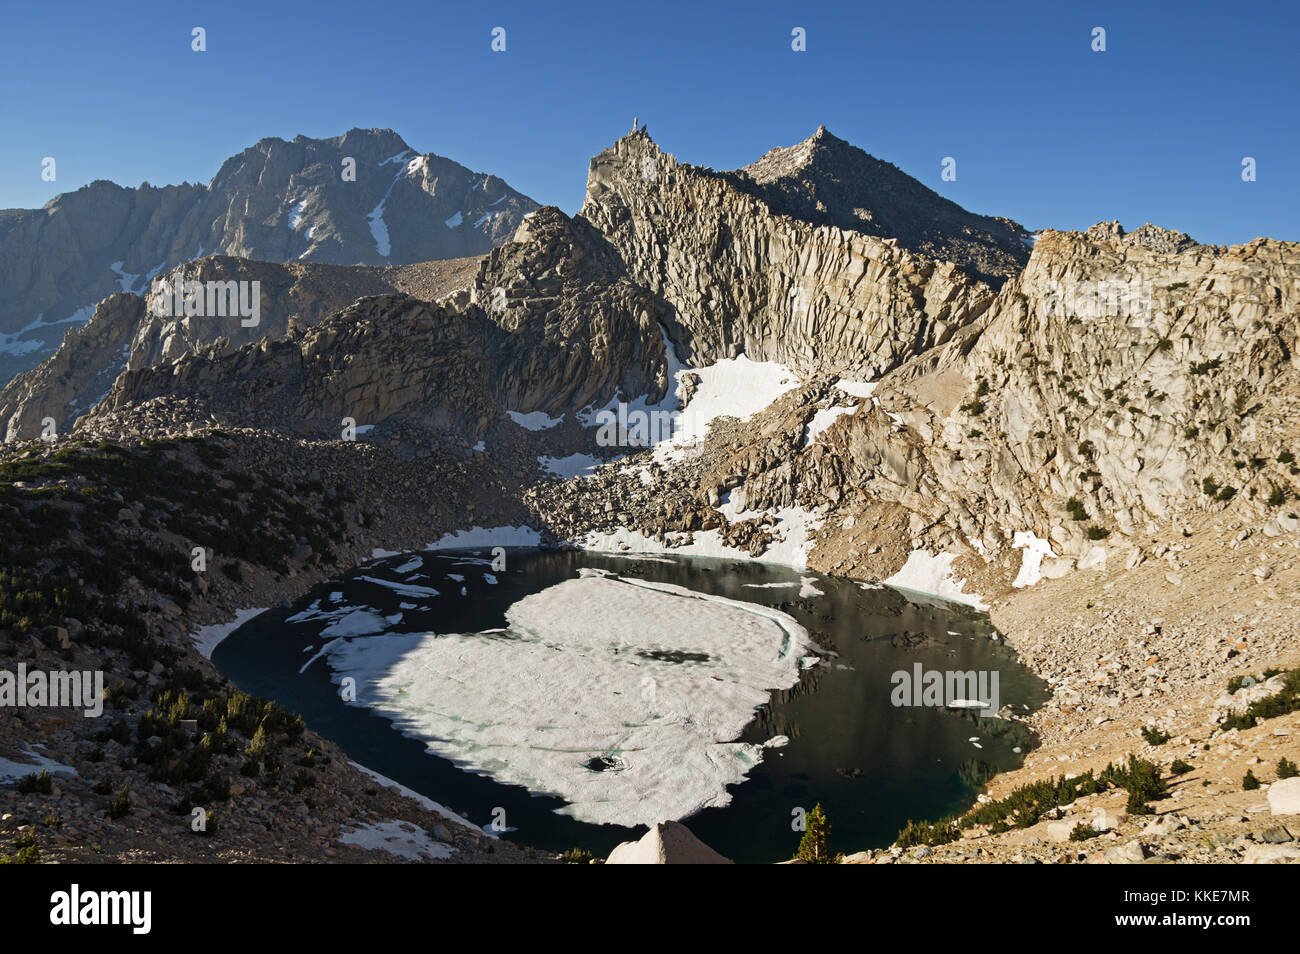 Grand Lac-de-poule et pic sans nom université pyramide crown mountain neige près de col de kearsarge dans les montagnes de la sierra Nevada de Californie Banque D'Images